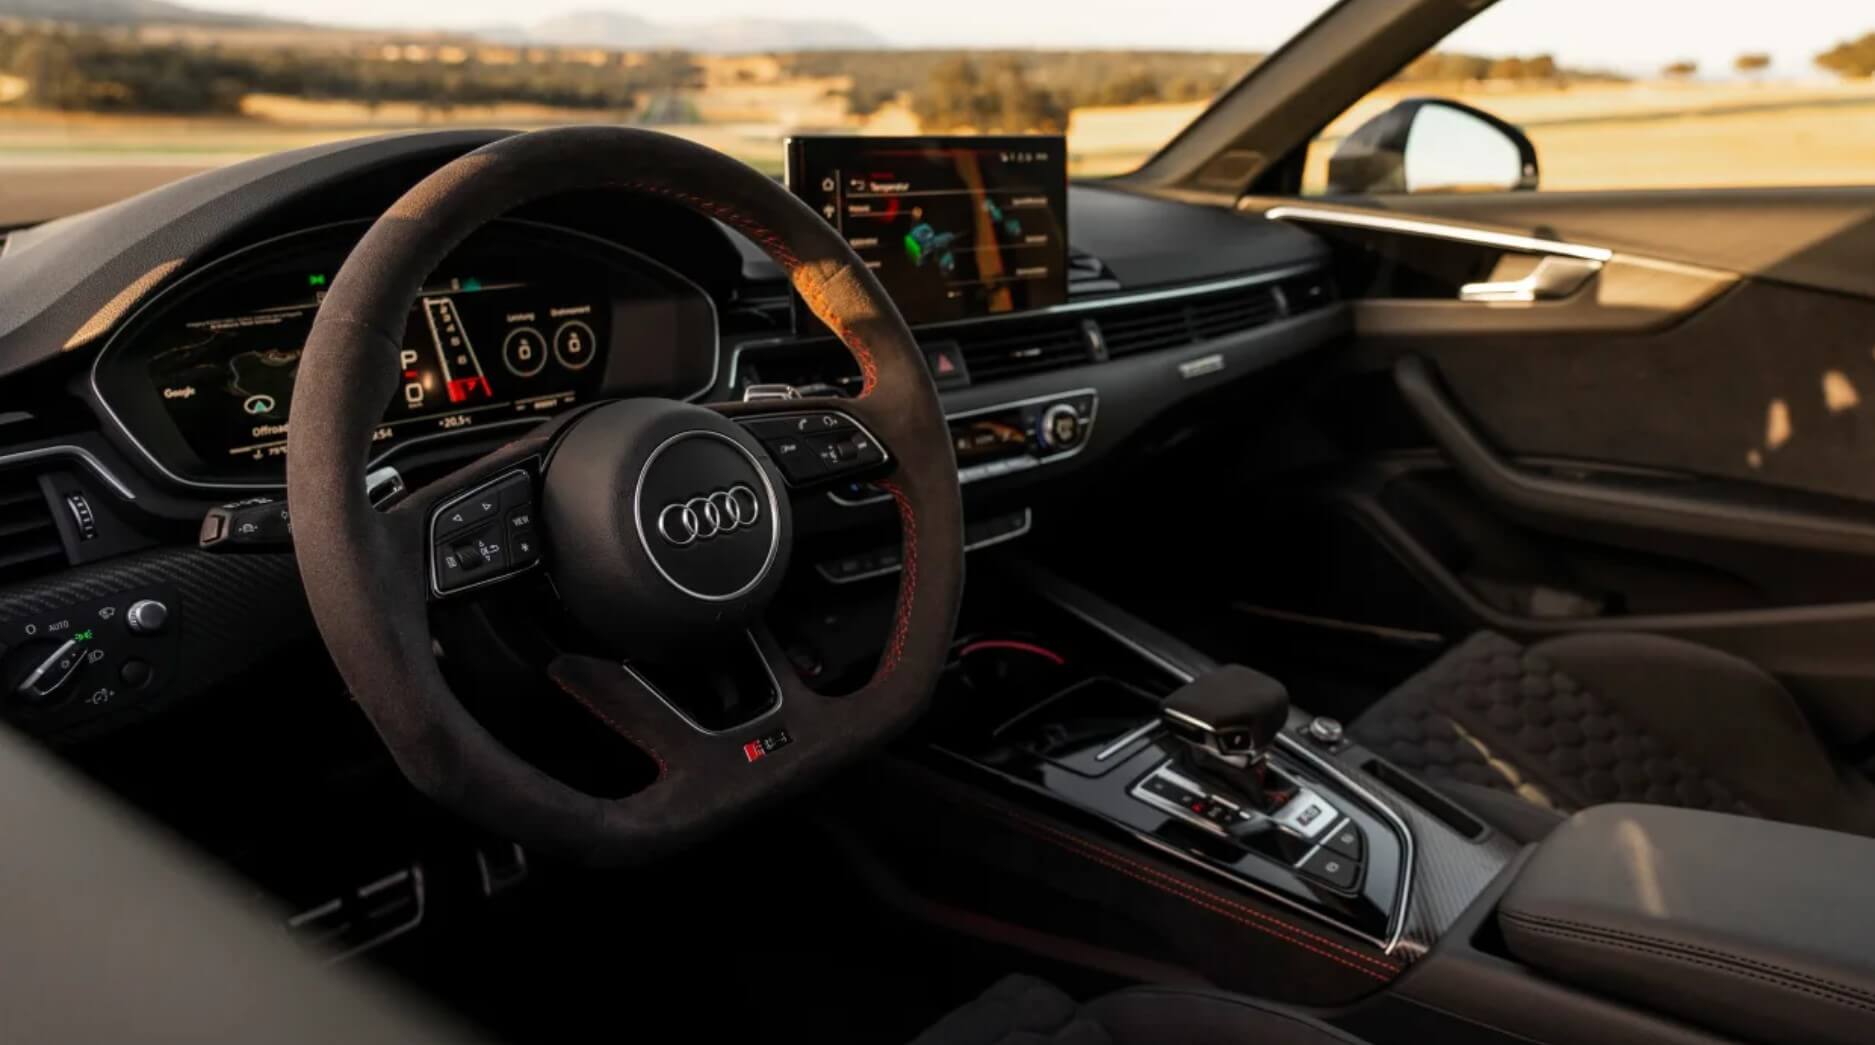 2013 ABT Audi RS4 Avant - Interior | Caricos